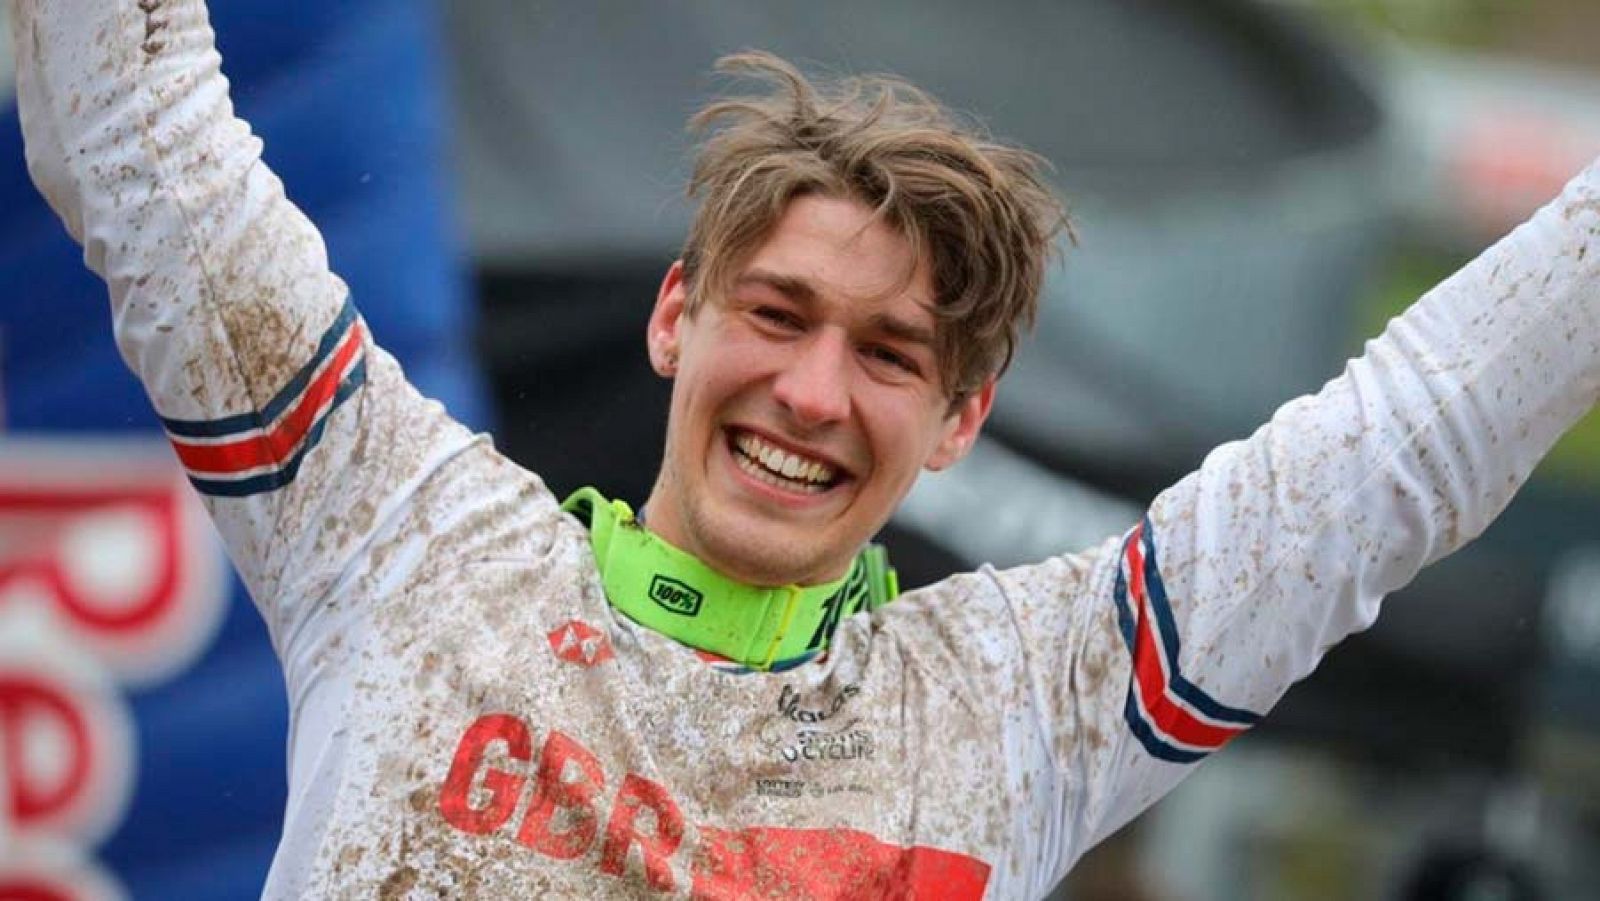 Reece Wilson, campeón del mundo de descenso en mountain bike